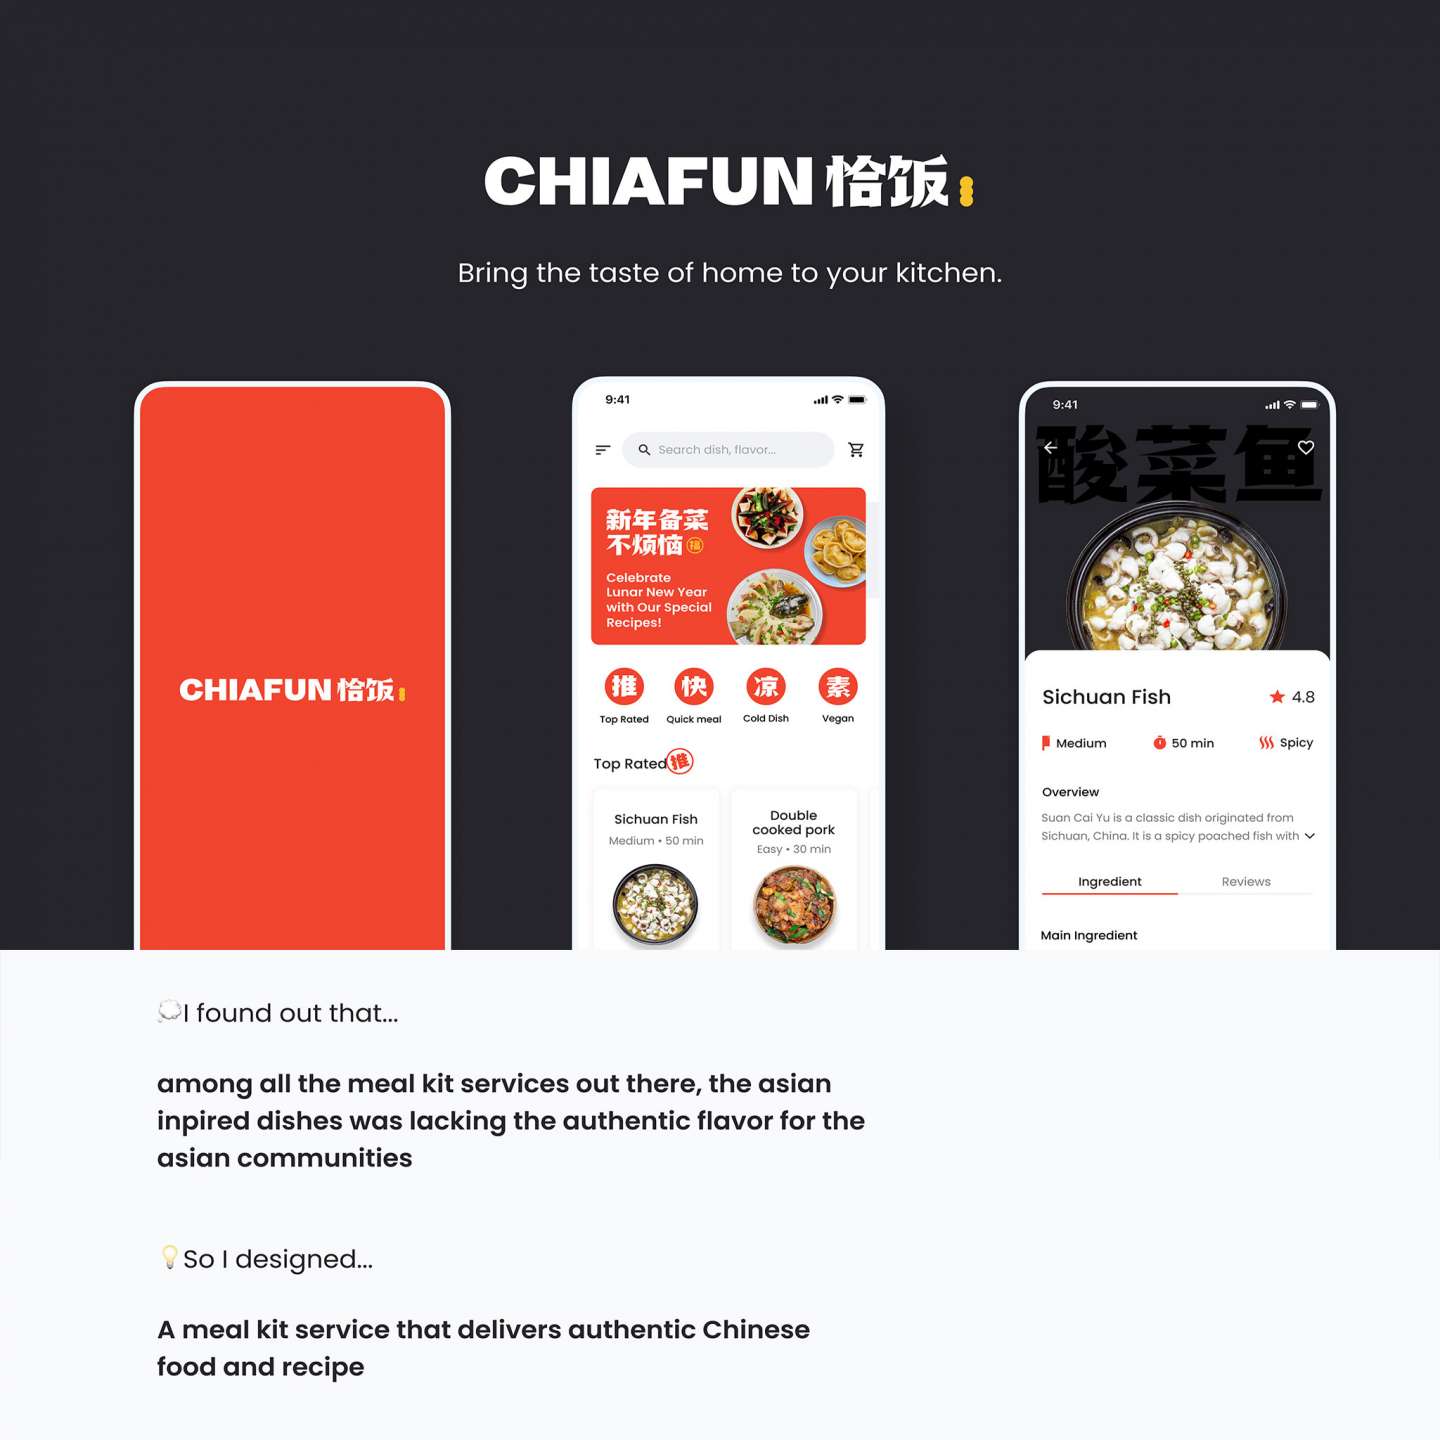 Chiafun Chinese Meal Kit Service